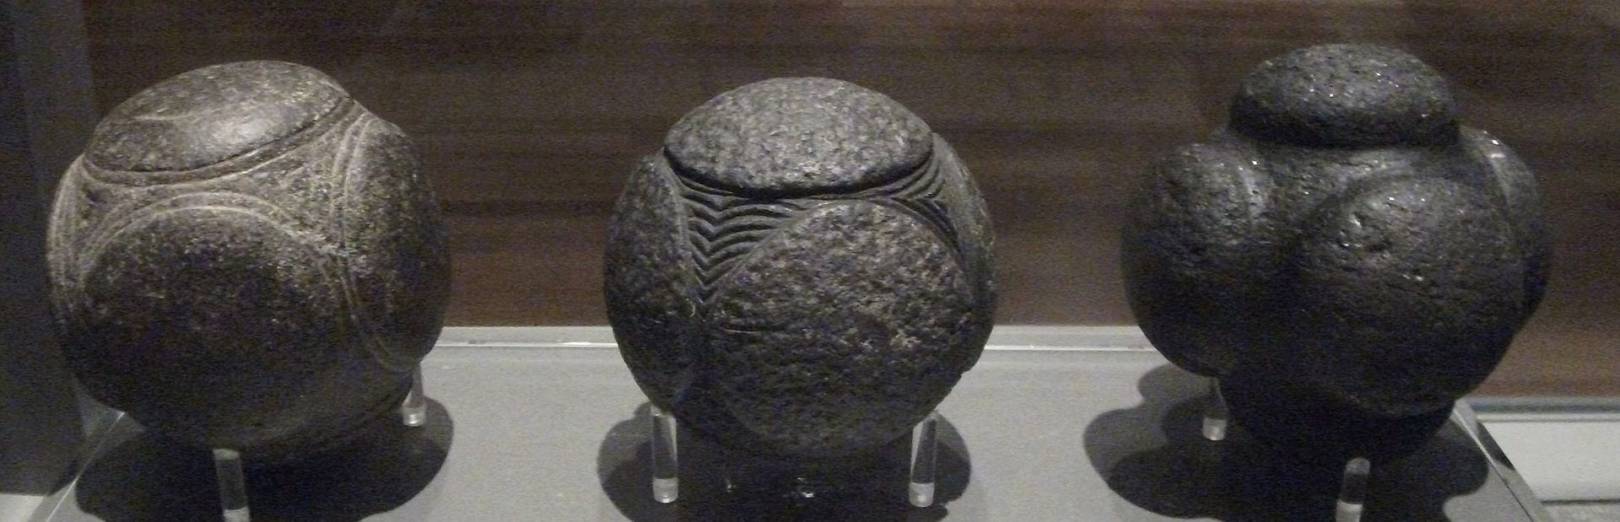 Три каменных шара выставленных в художественной галерее и музее Келвингроув в шотландском городе Глазго. /en.wikipedia.org/